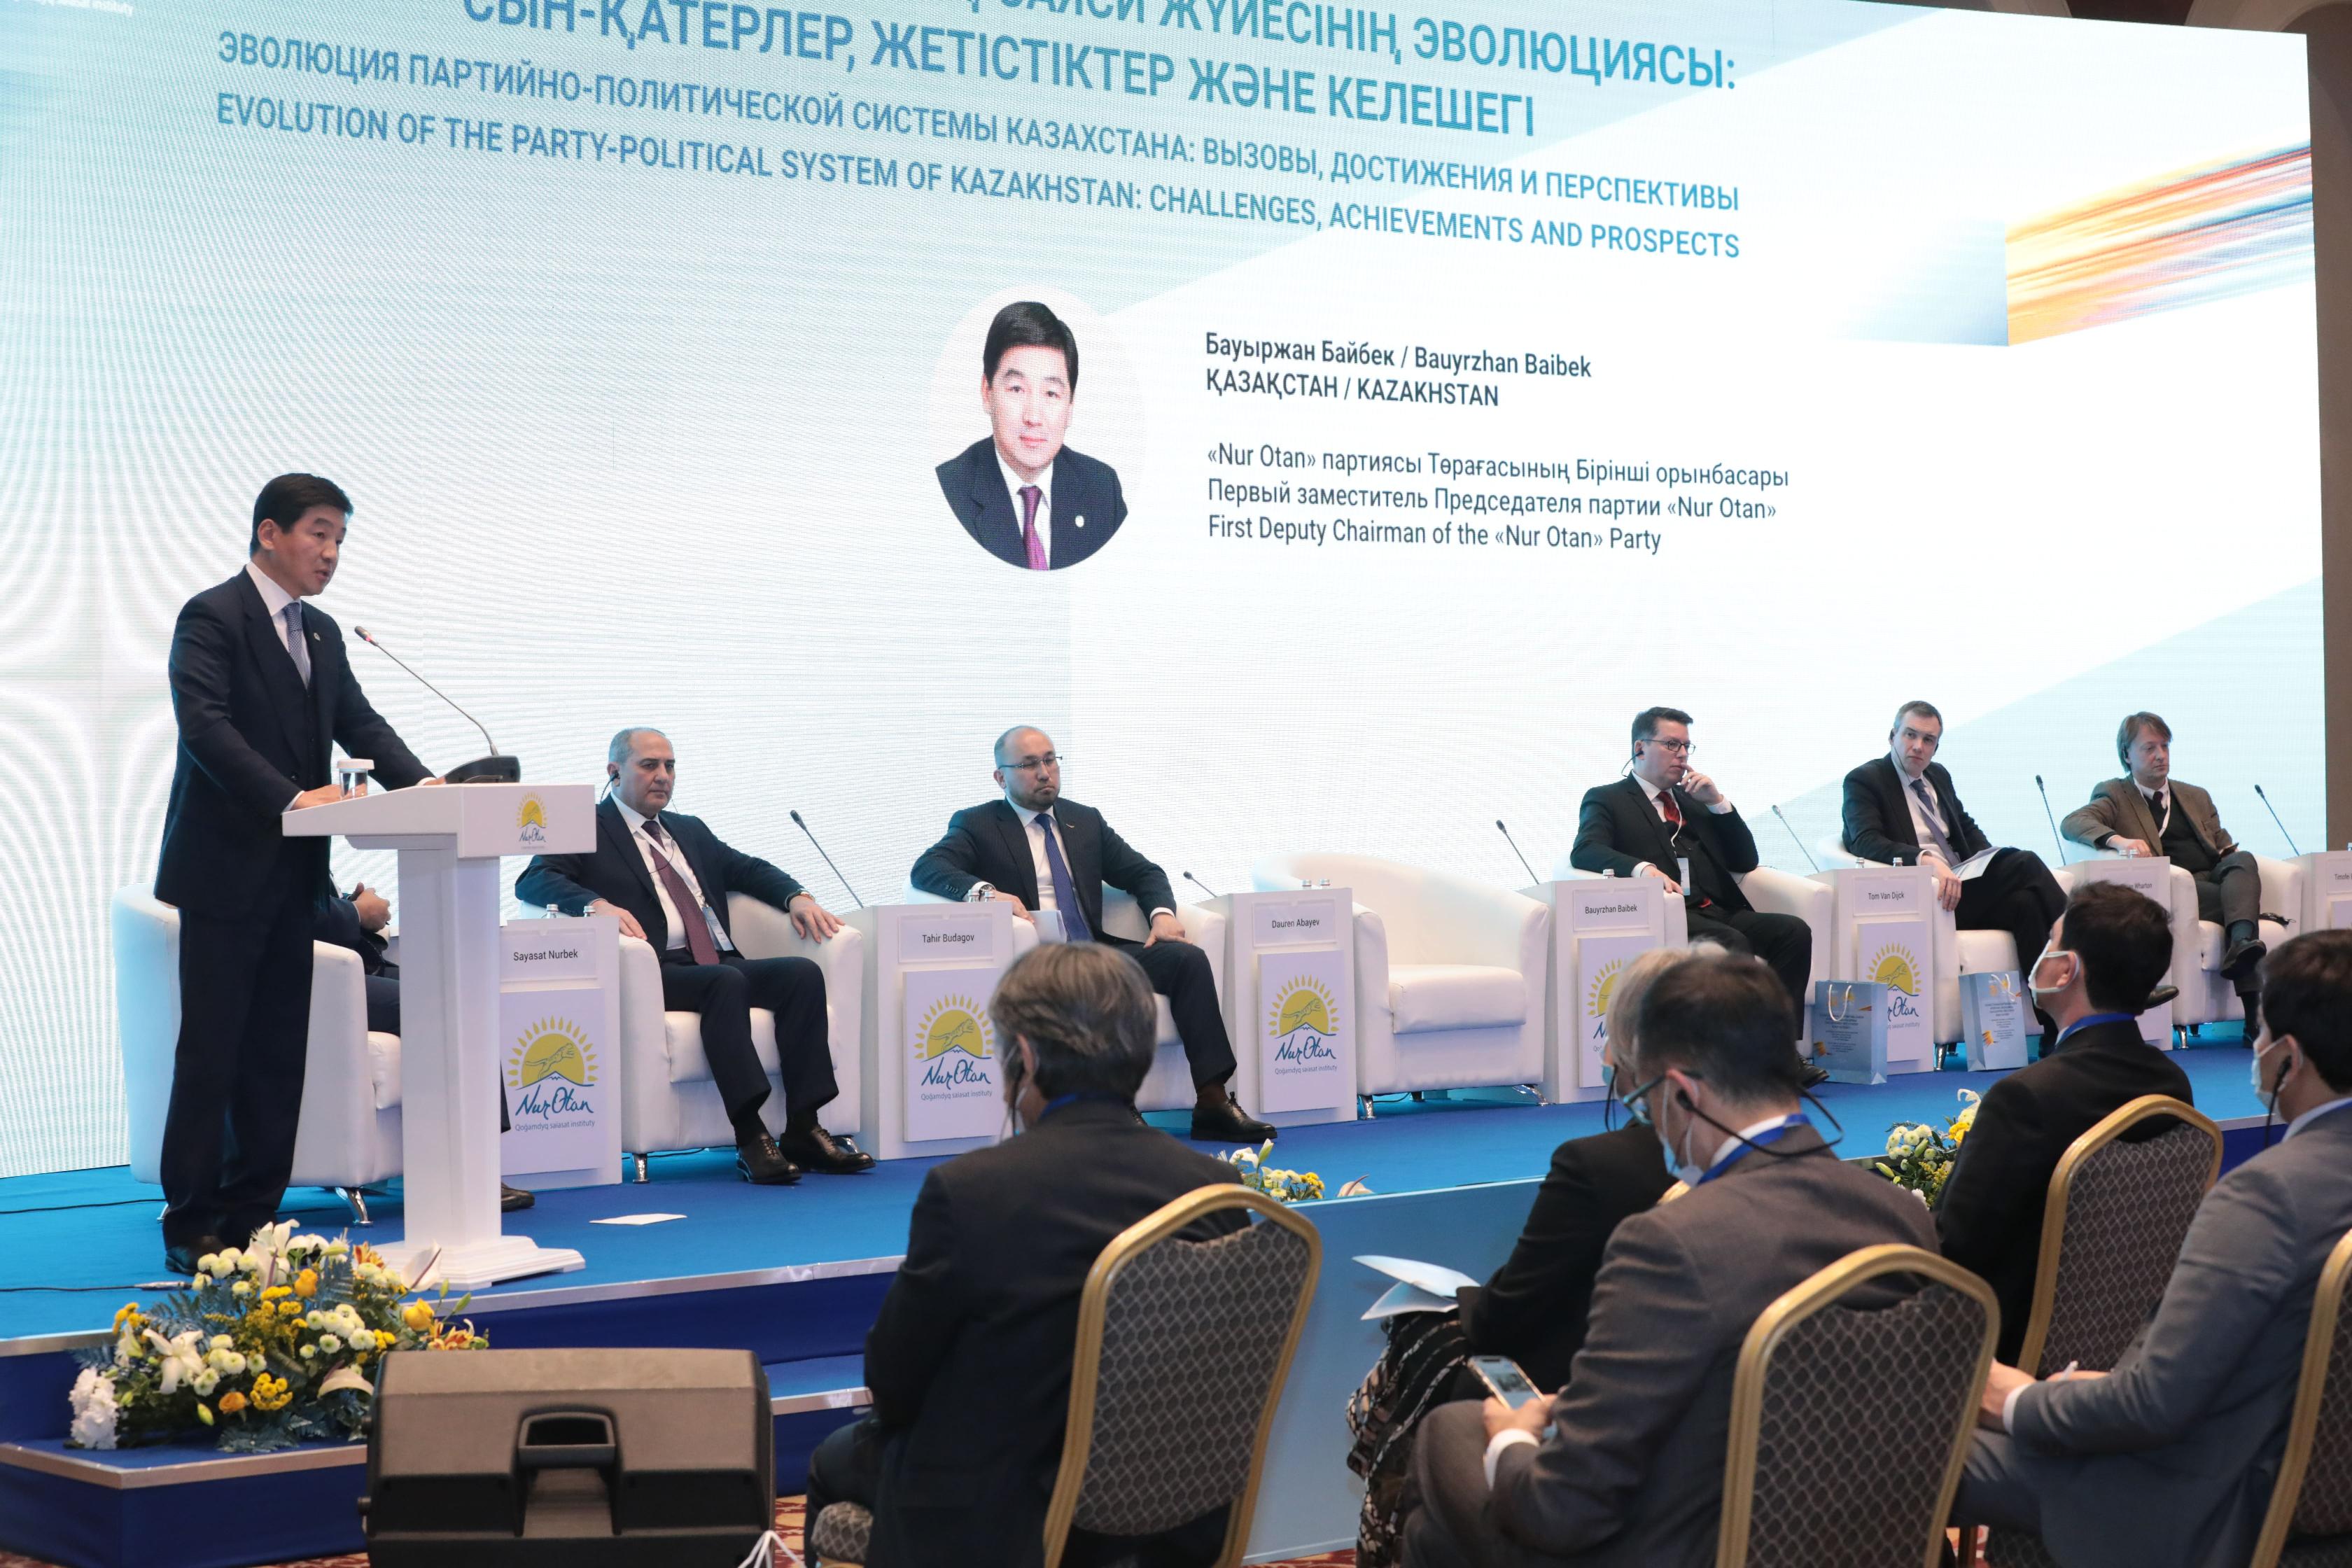 О Международном форуме «Эволюция партийно-политической системы Казахстана: вызовы, достижения и перспективы»